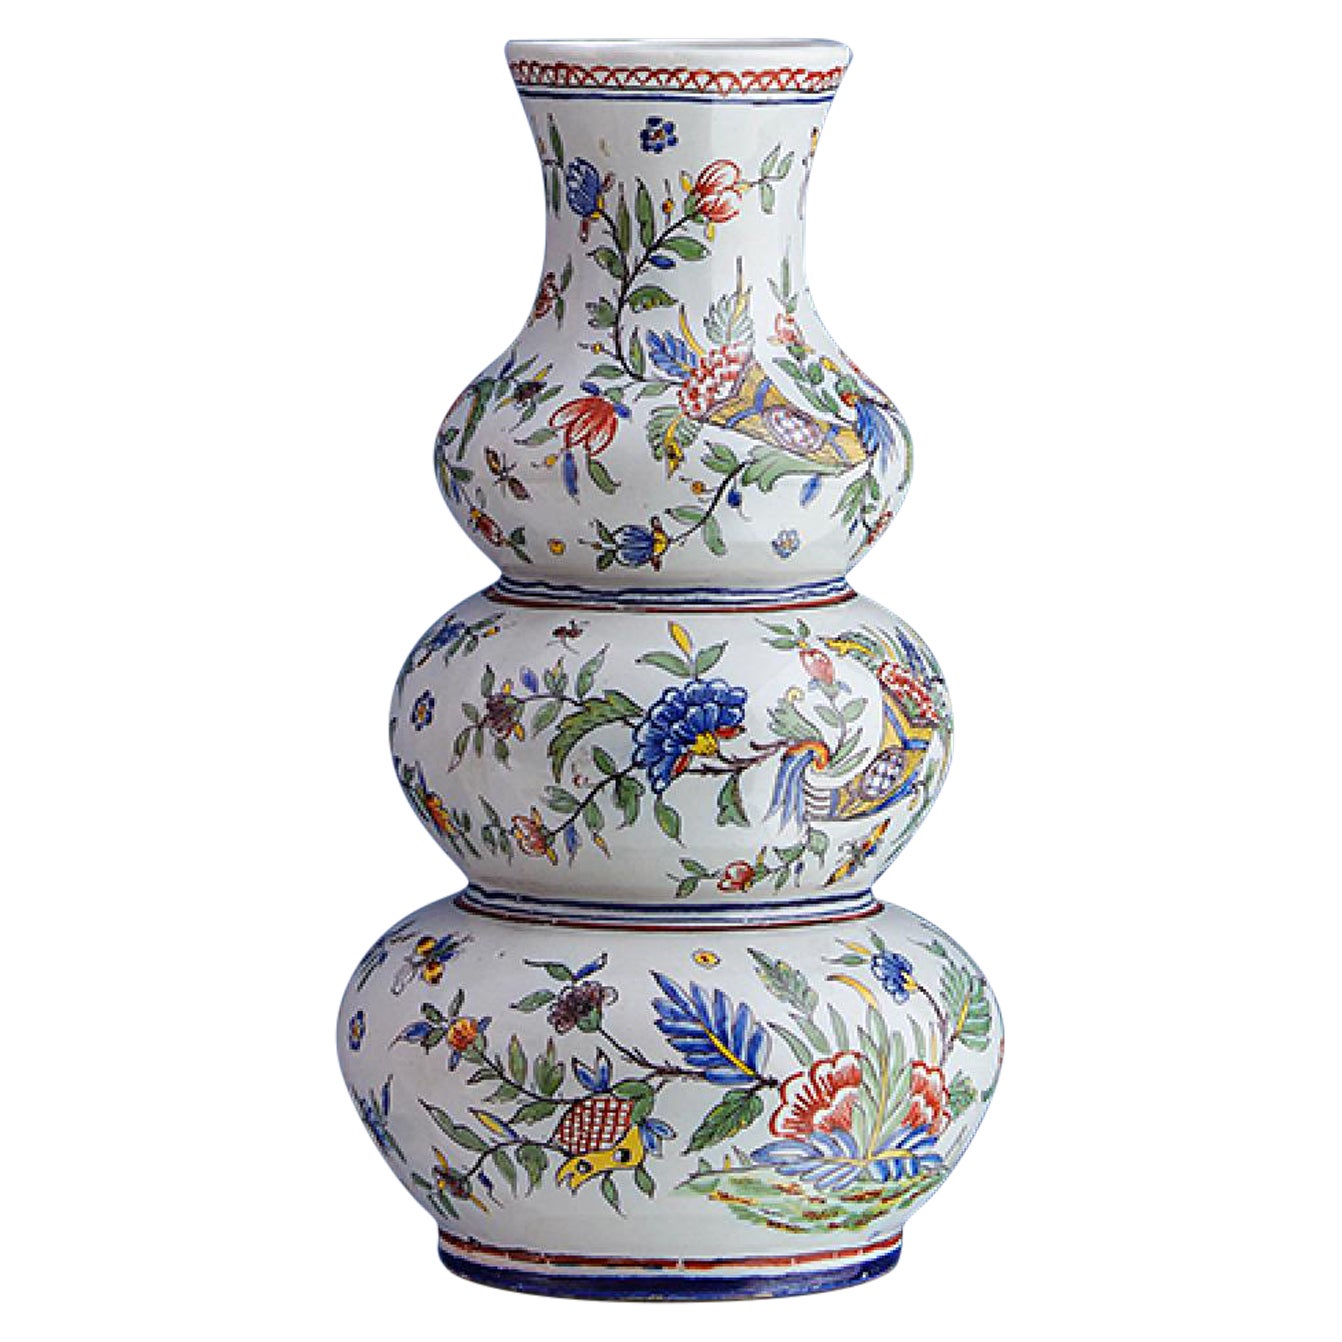 Antique Ceramic Flower Painted Vase, France, 19th Century